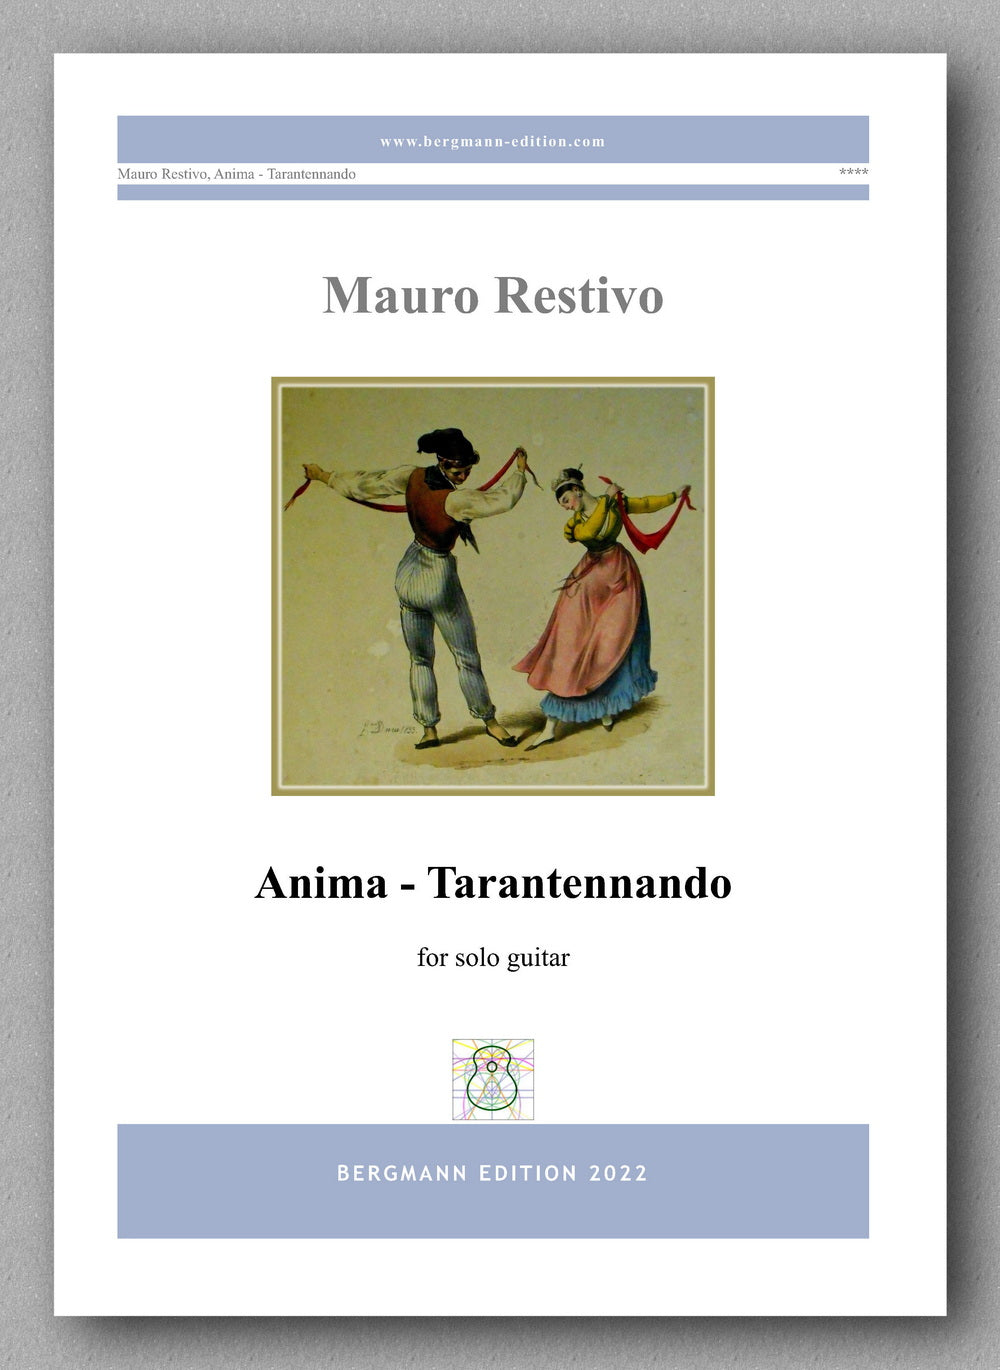 Mae coveruro Restivo, Anima - Tarantennando - preview of the cover